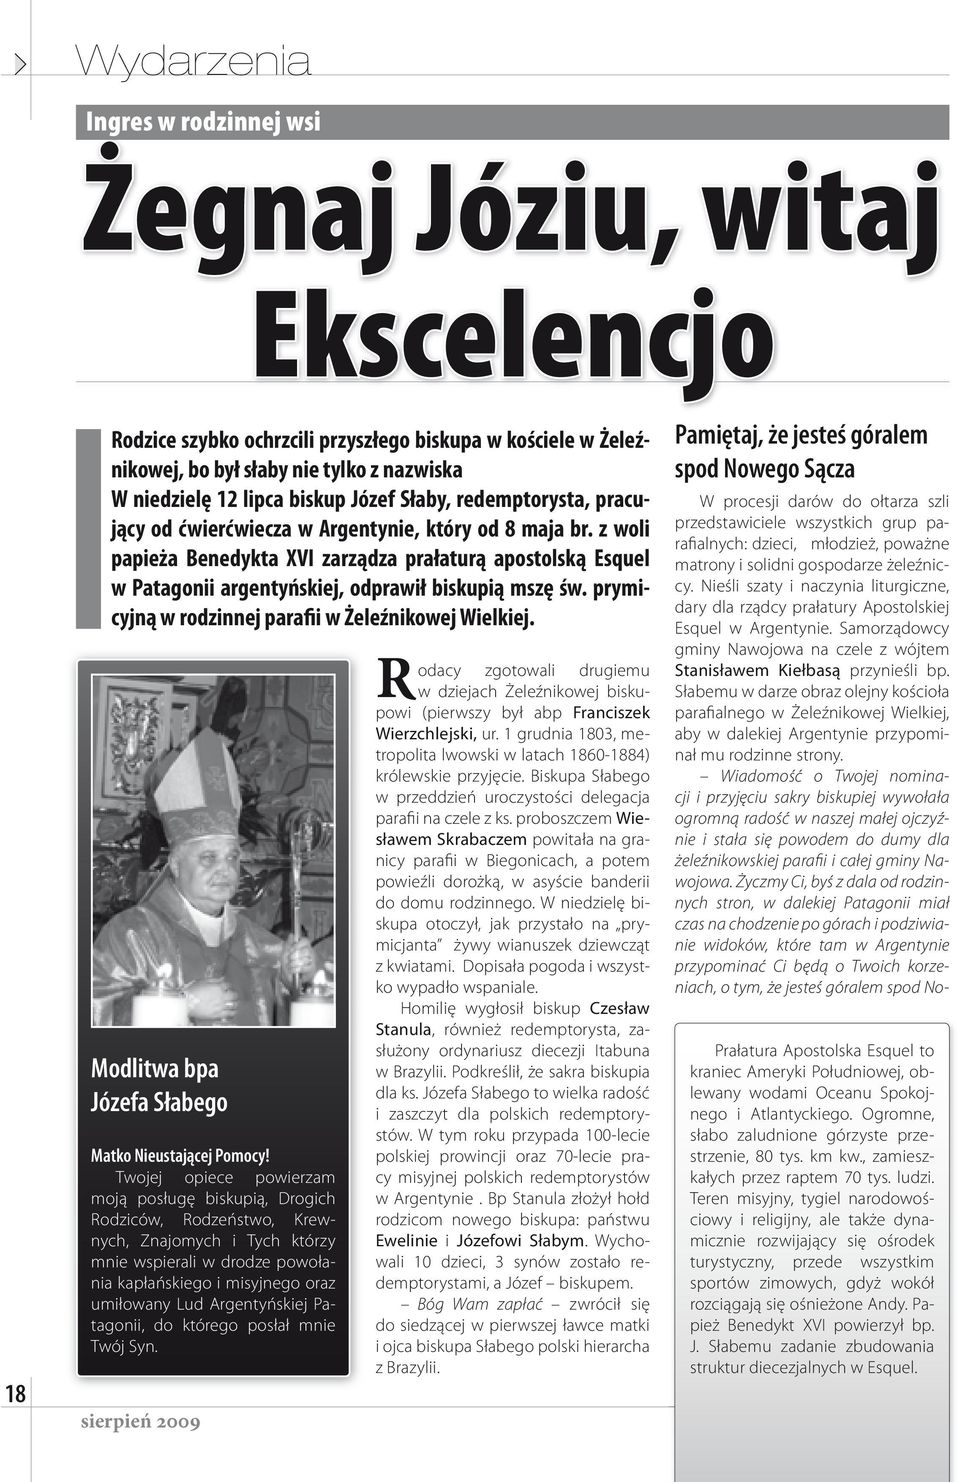 z woli papieża Benedykta XVI zarządza prałaturą apostolską Esquel w Patagonii argentyńskiej, odprawił biskupią mszę św. prymicyjną w rodzinnej parafii w Żeleźnikowej Wielkiej.